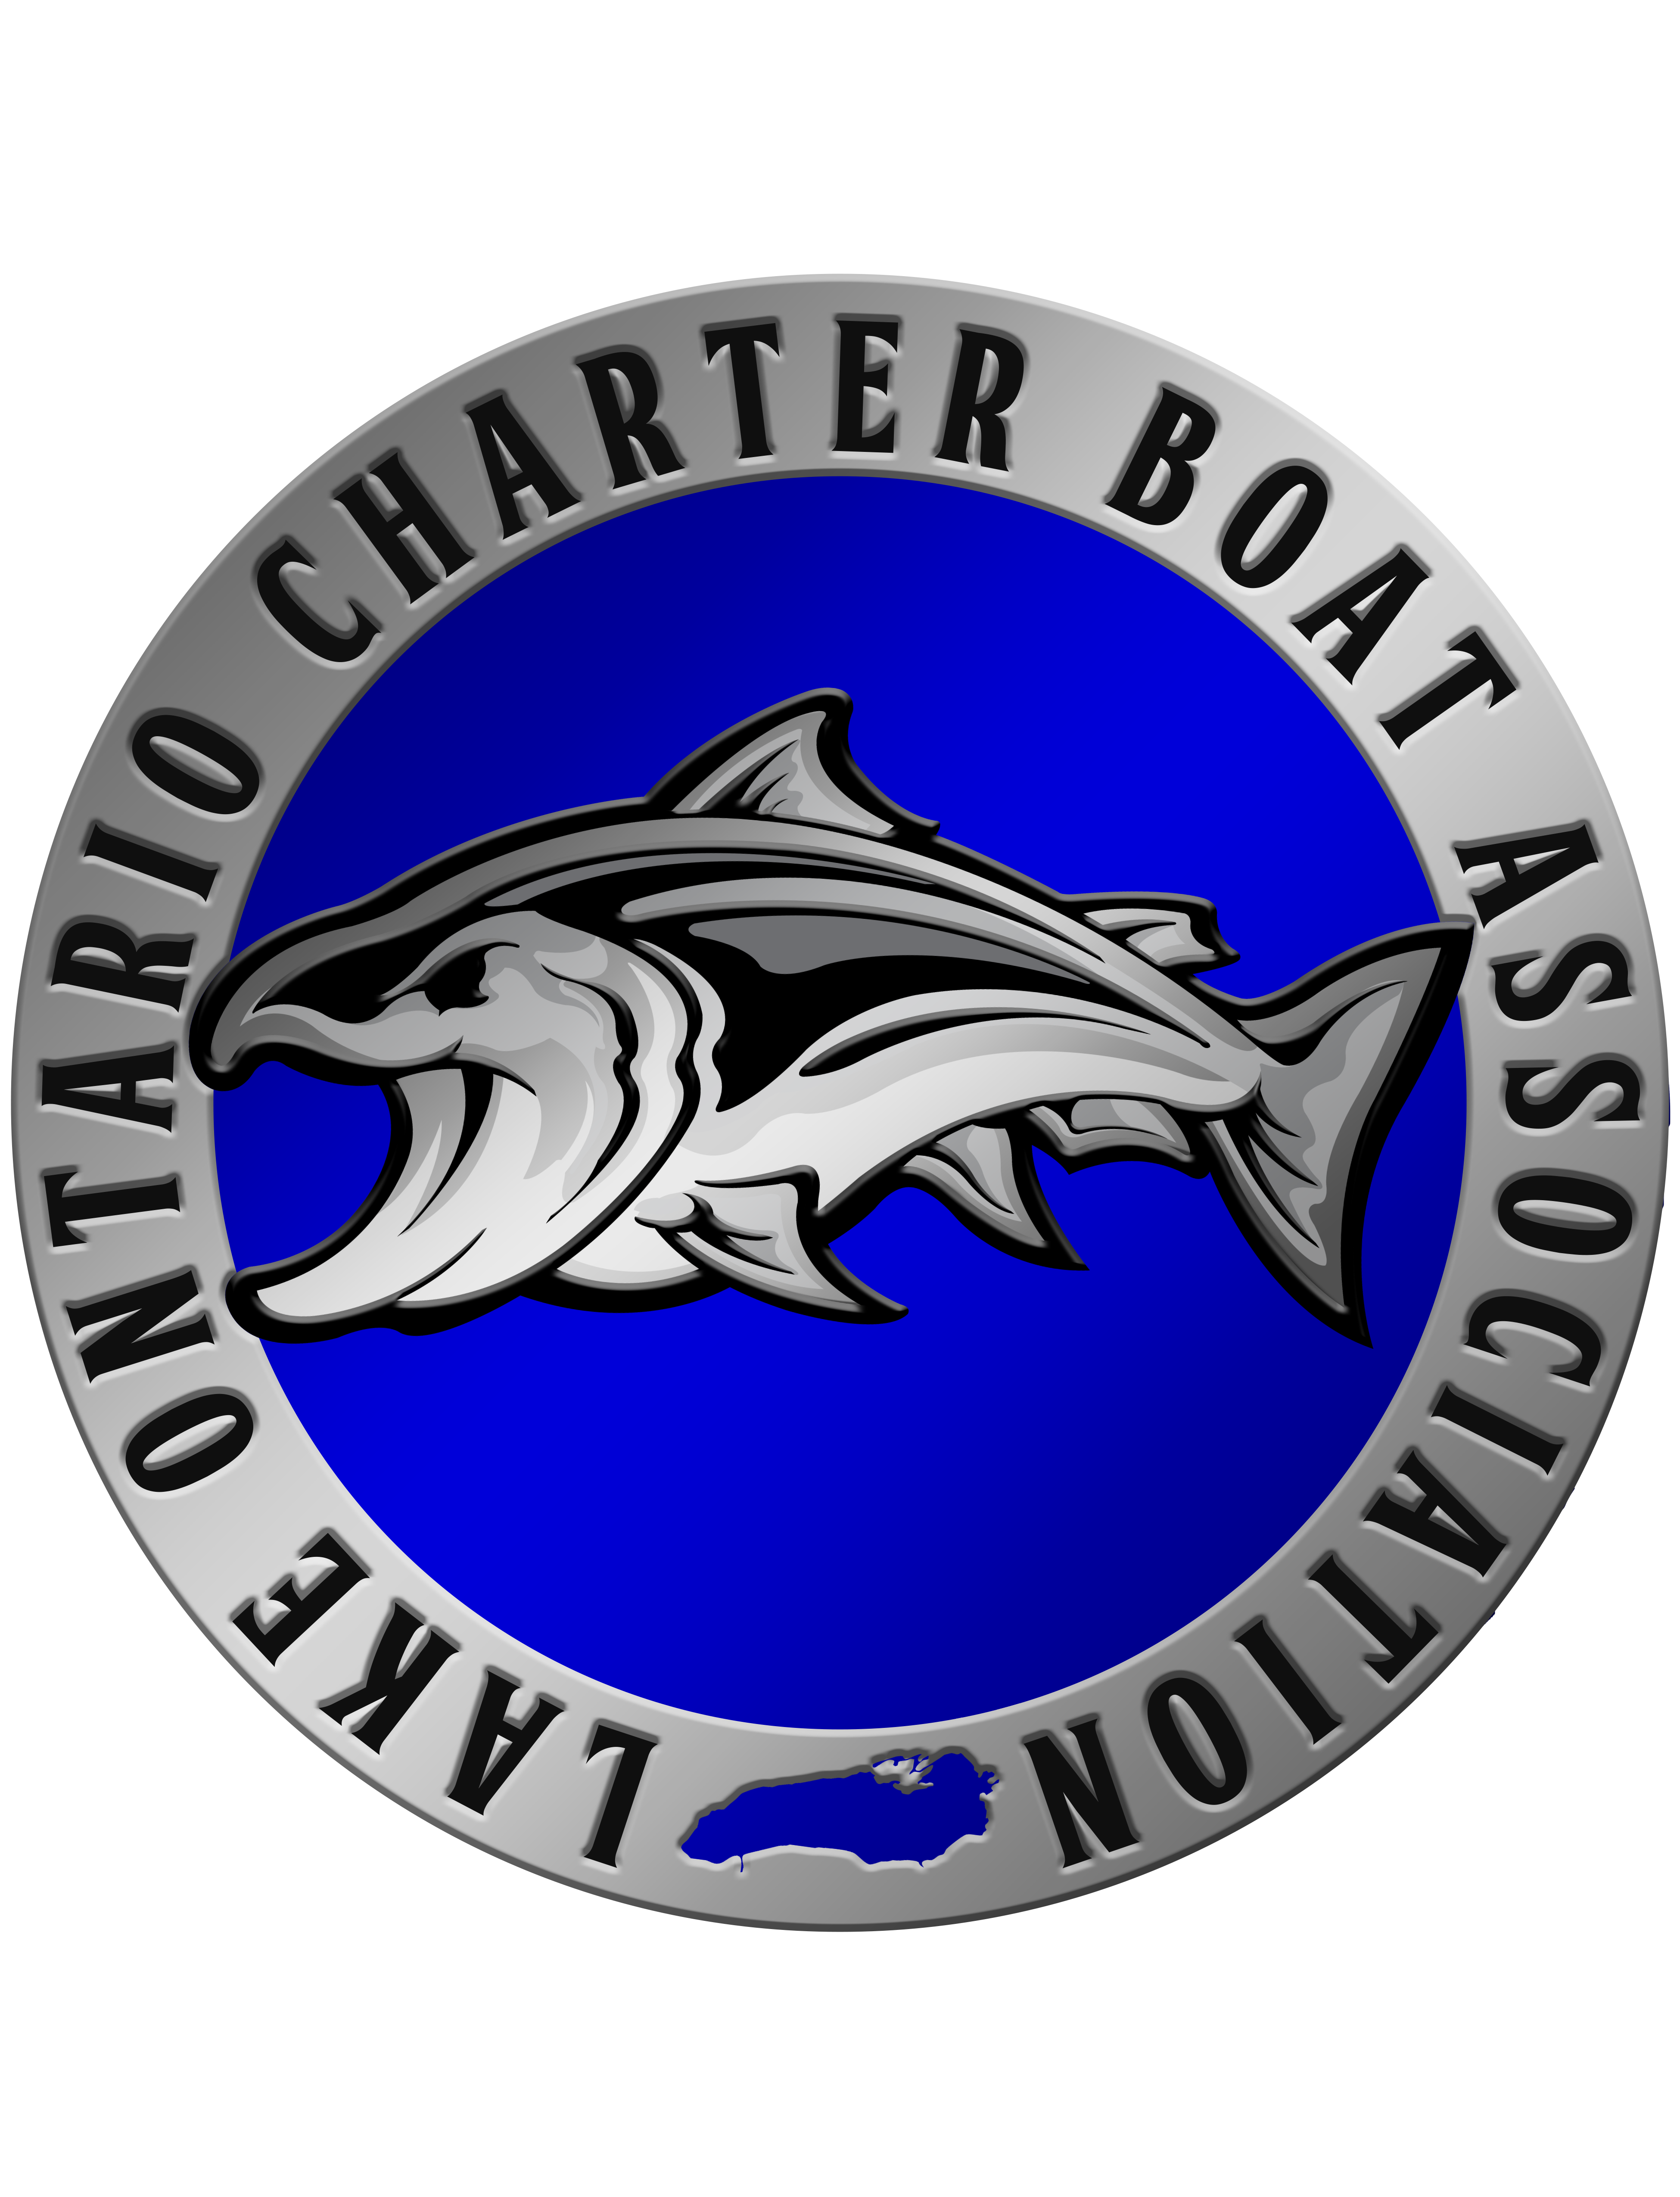 Lake Ontario Charter Boat Association- LOCBA Meeting